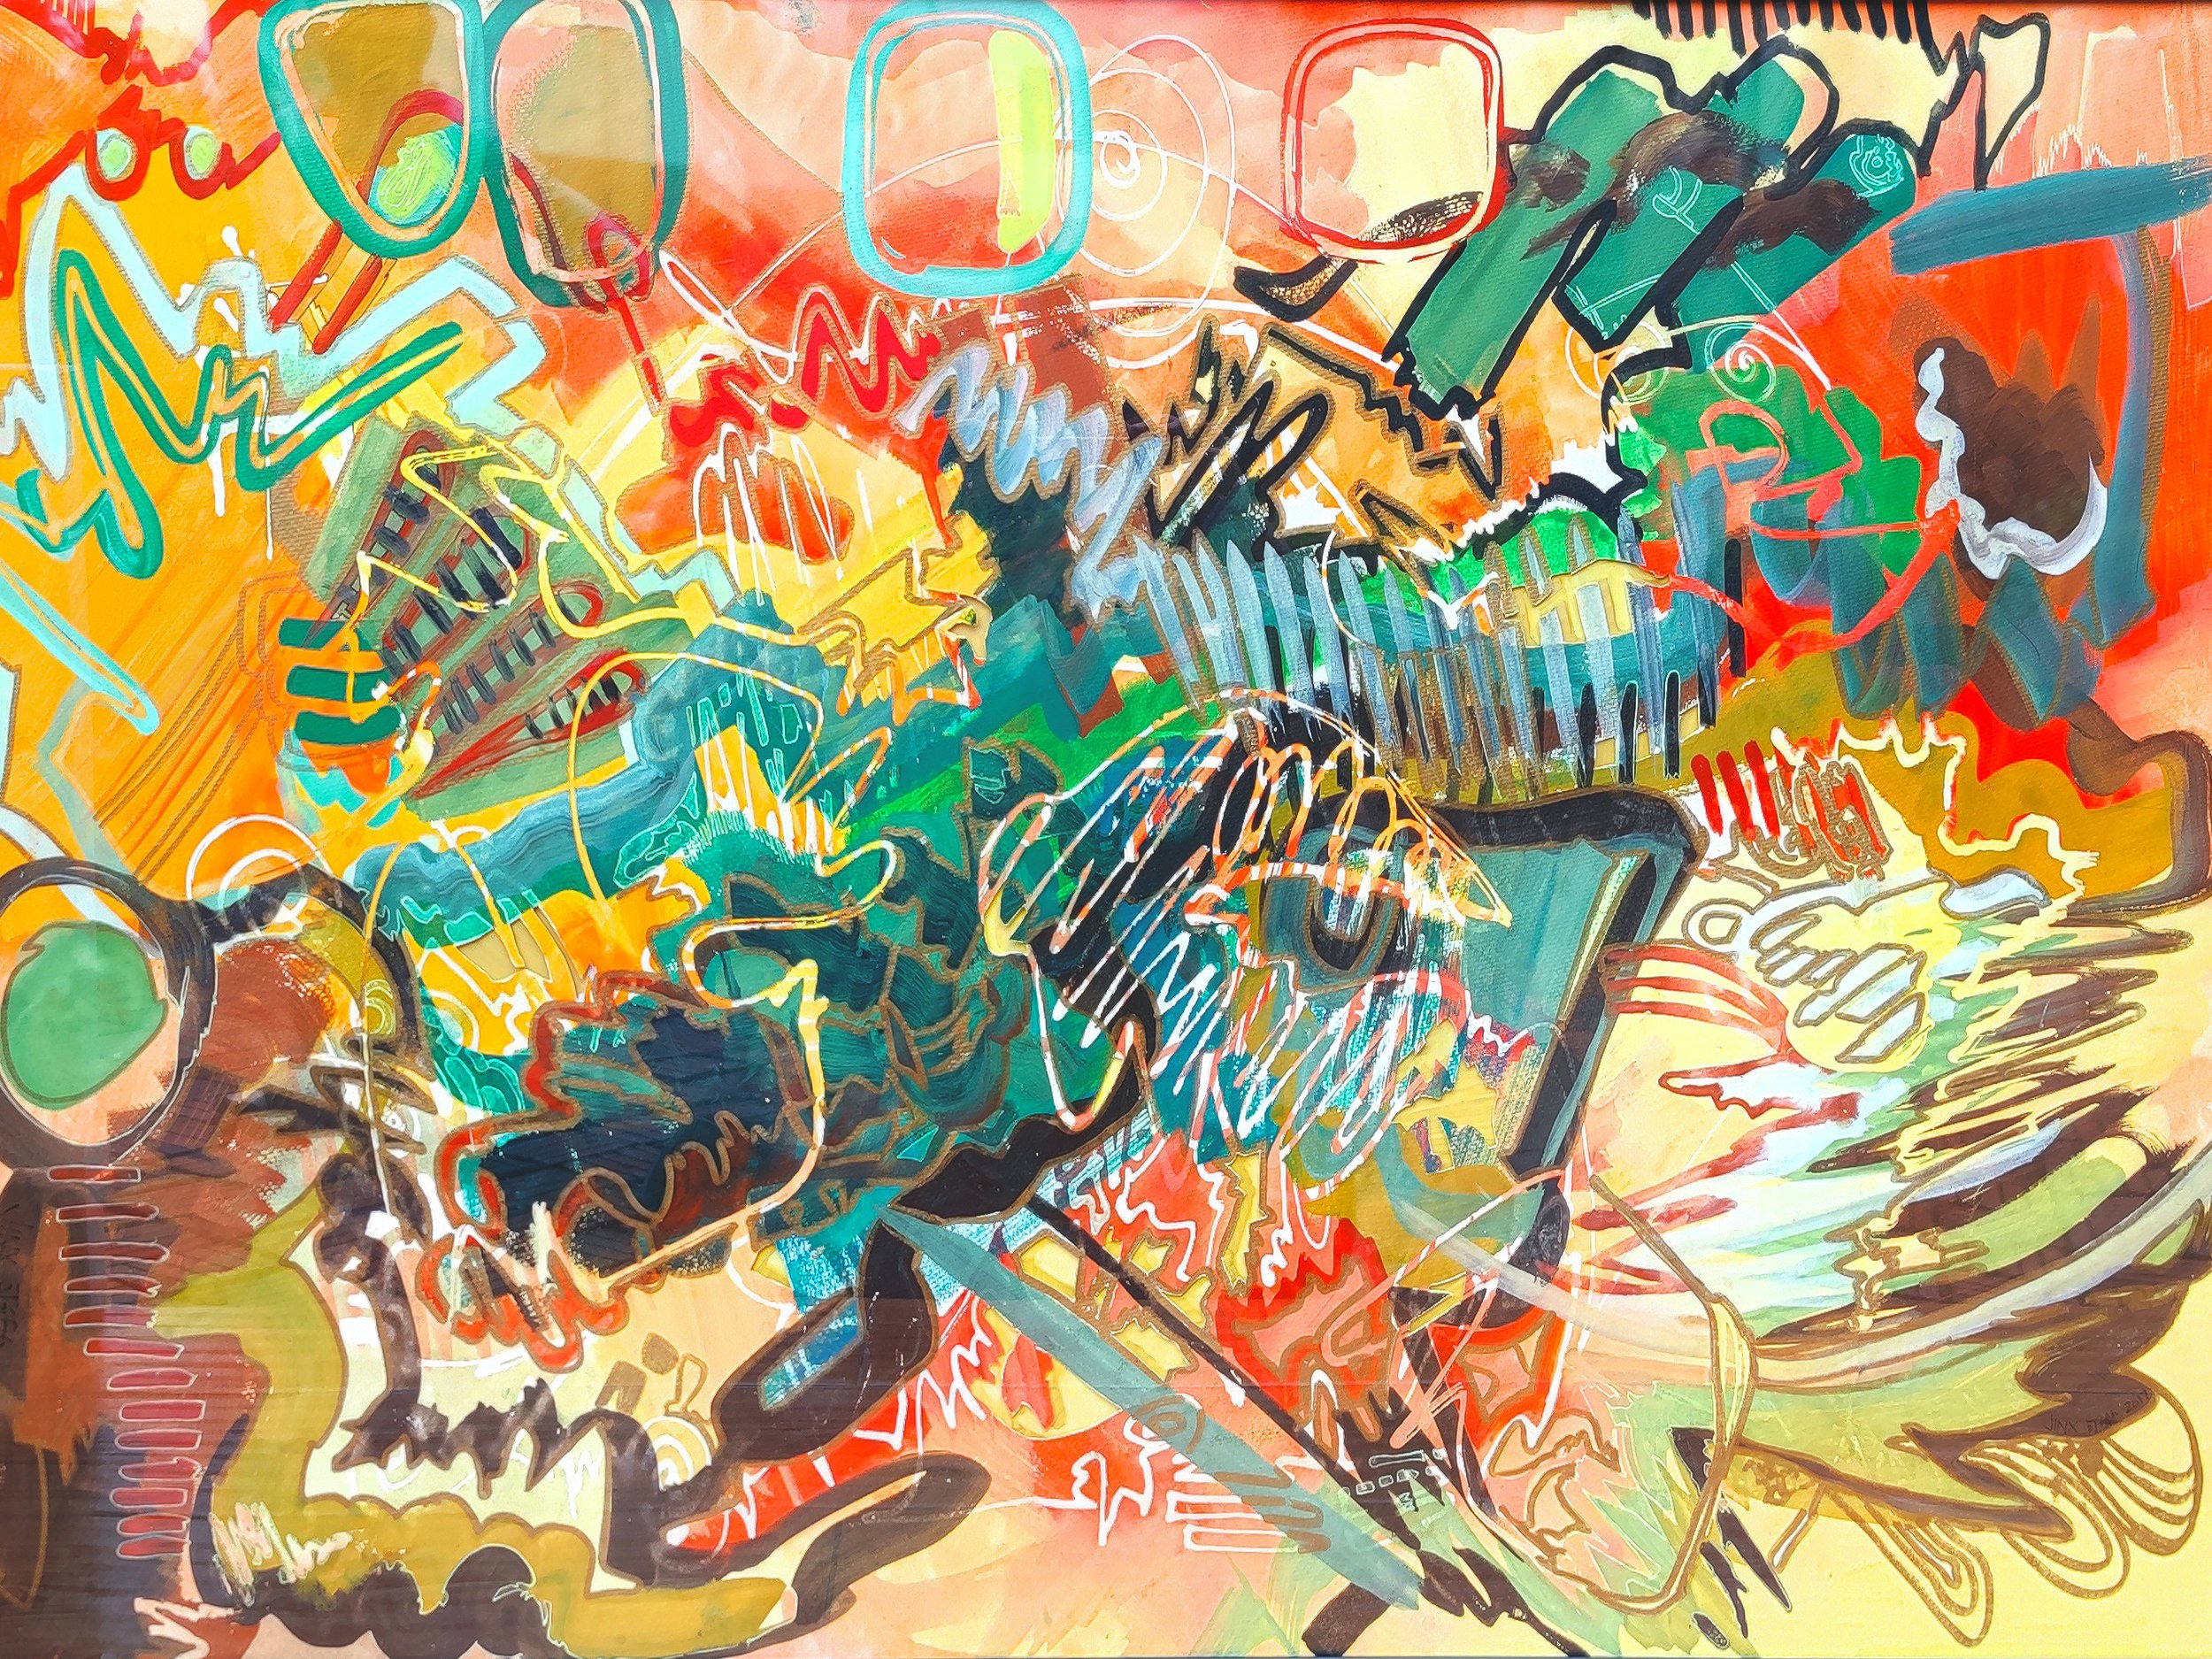 "Graffiti", 80x52, mixed media on paper